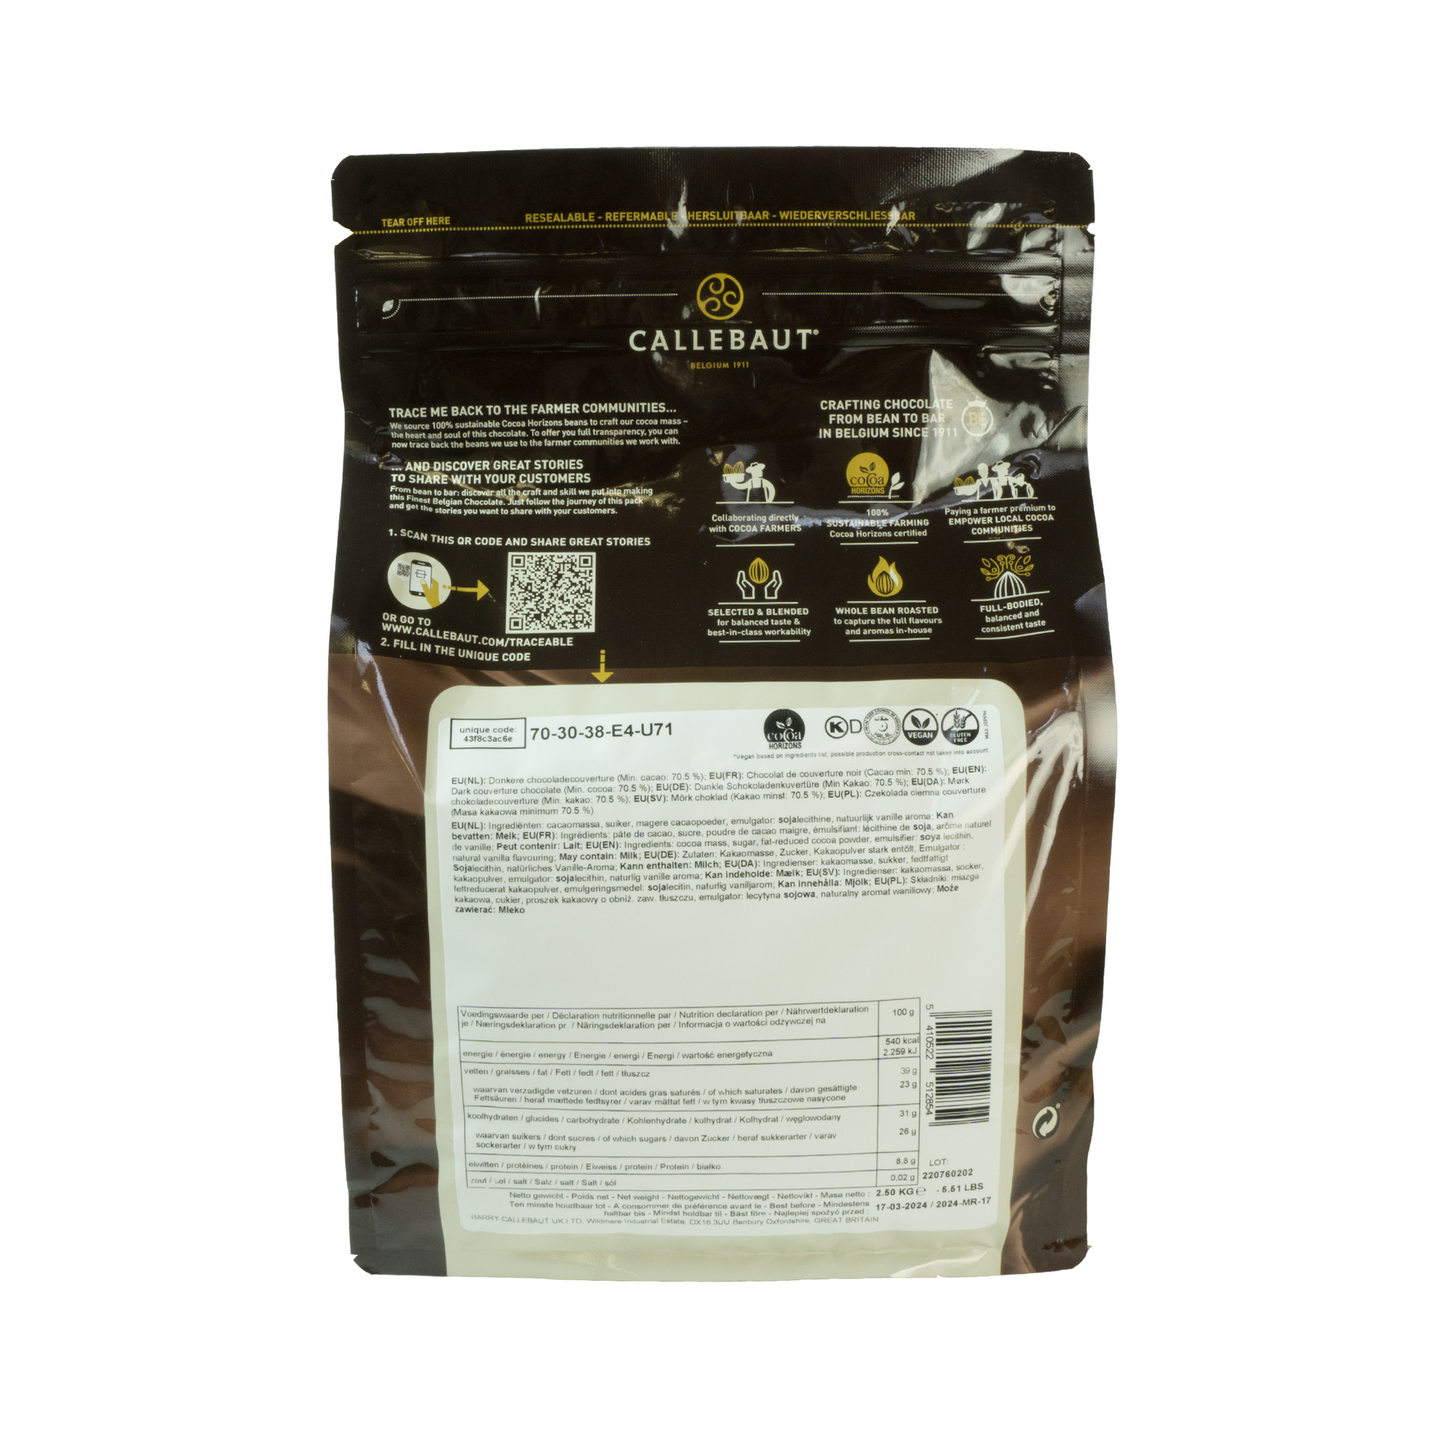 Callebaut Dark 70% Chocolate 70-30-38 Callets 2.5 kg